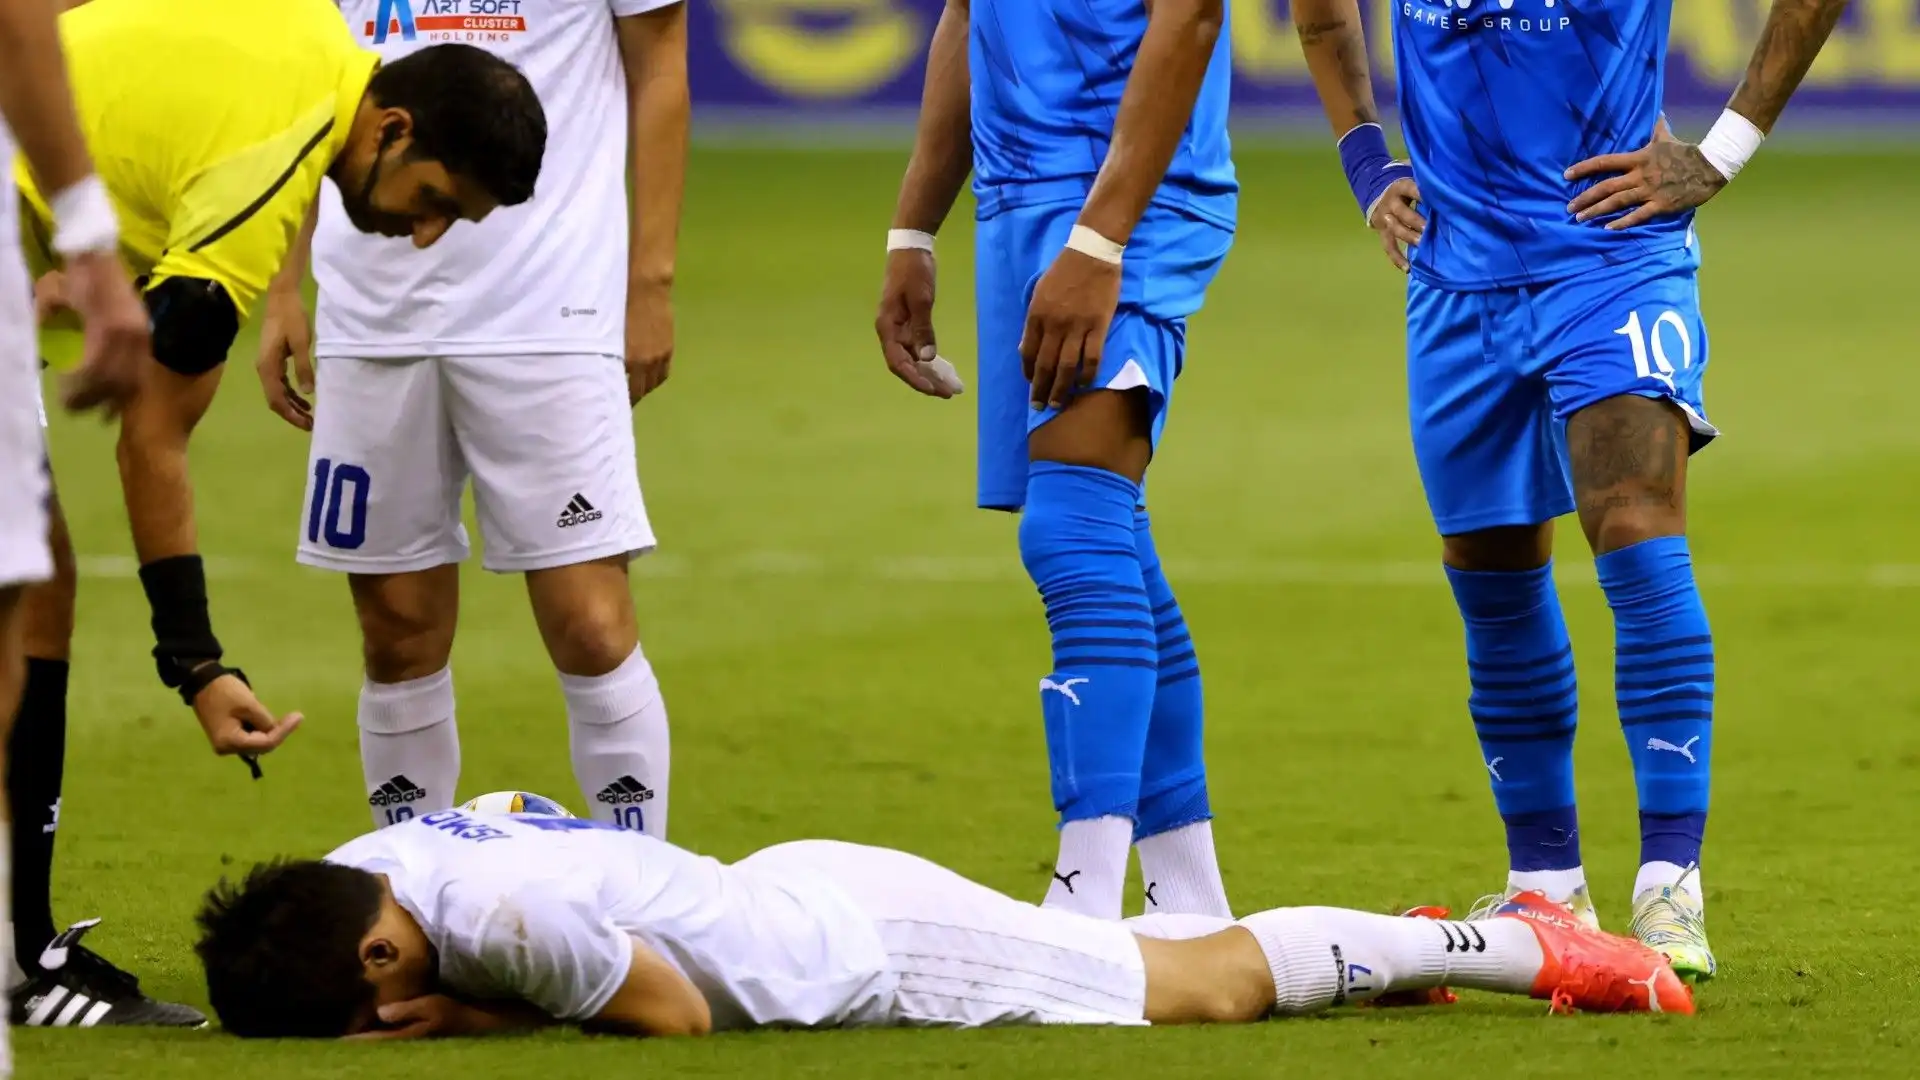 Non contento, una volta a terra Neymar gli ha anche calciato il pallone addosso